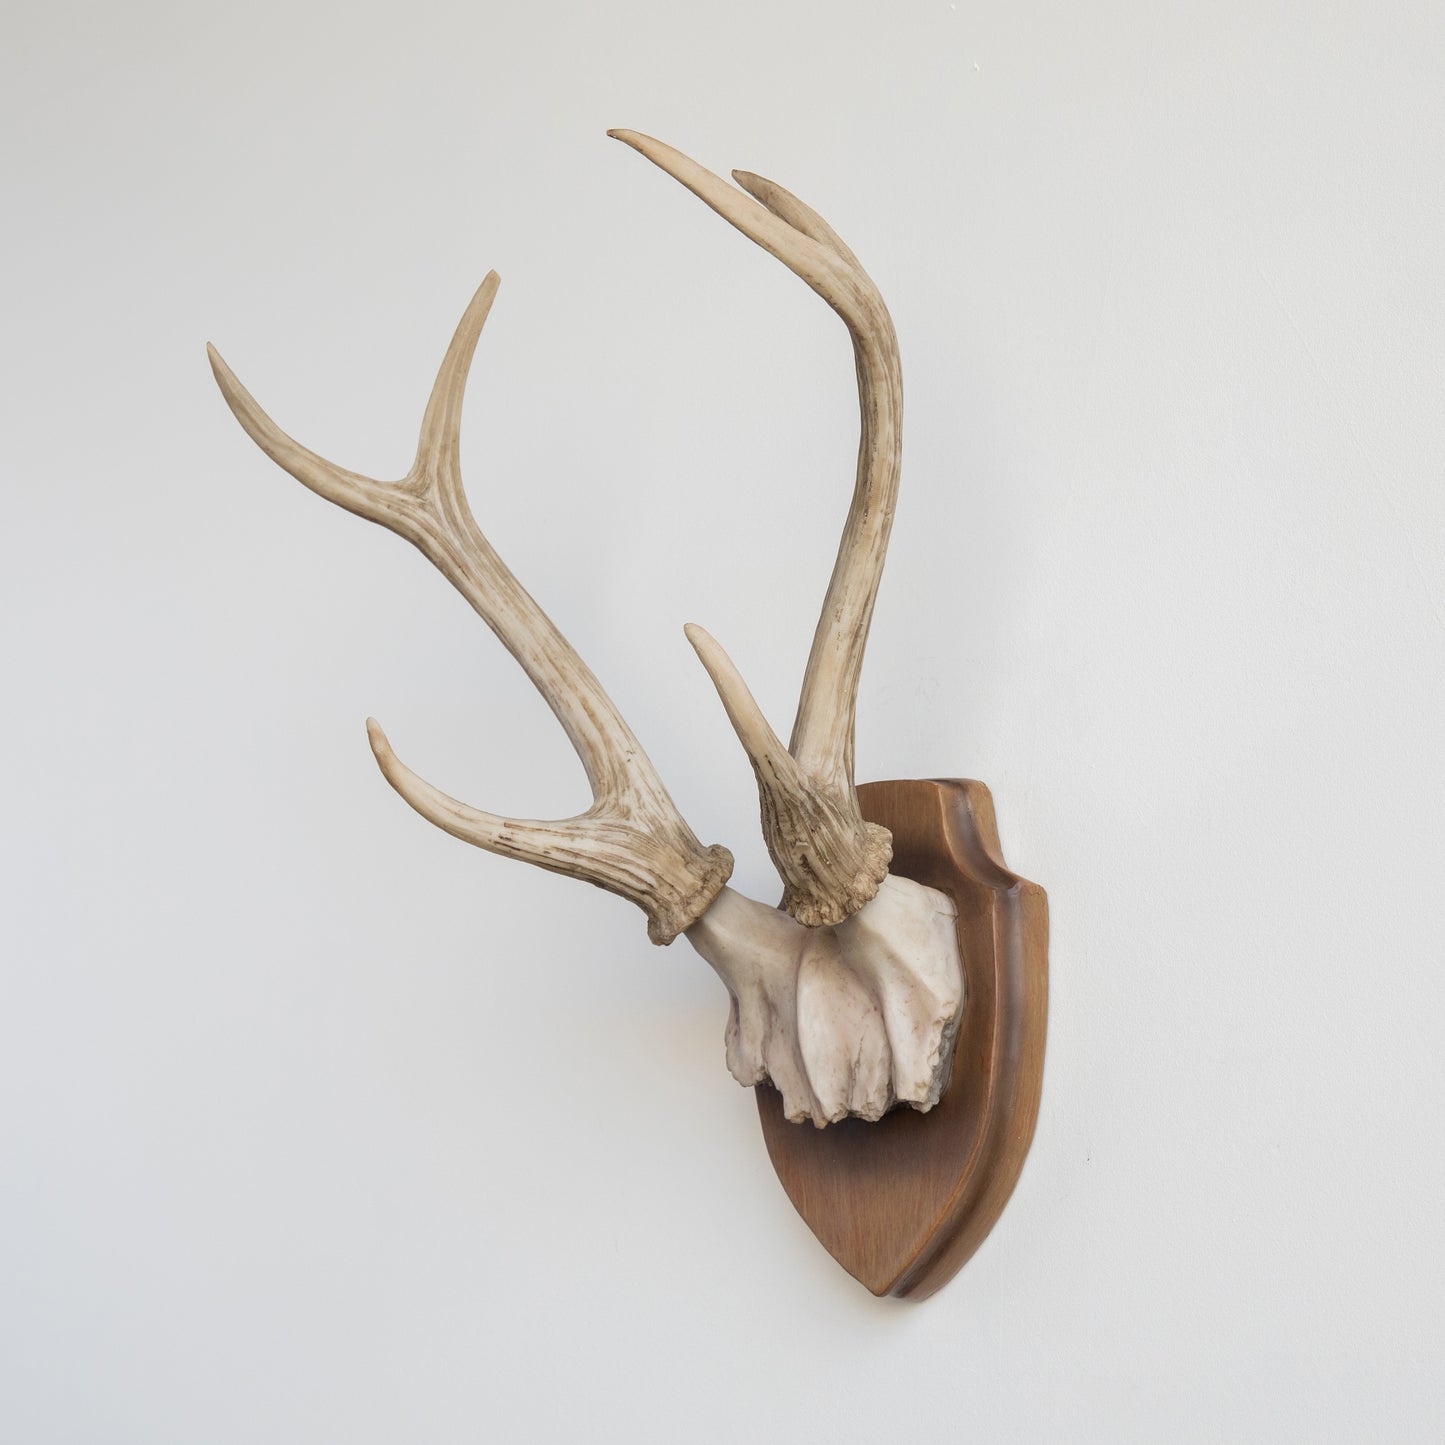 Faux Deer Antler Wall Trophy // Brown and Bone